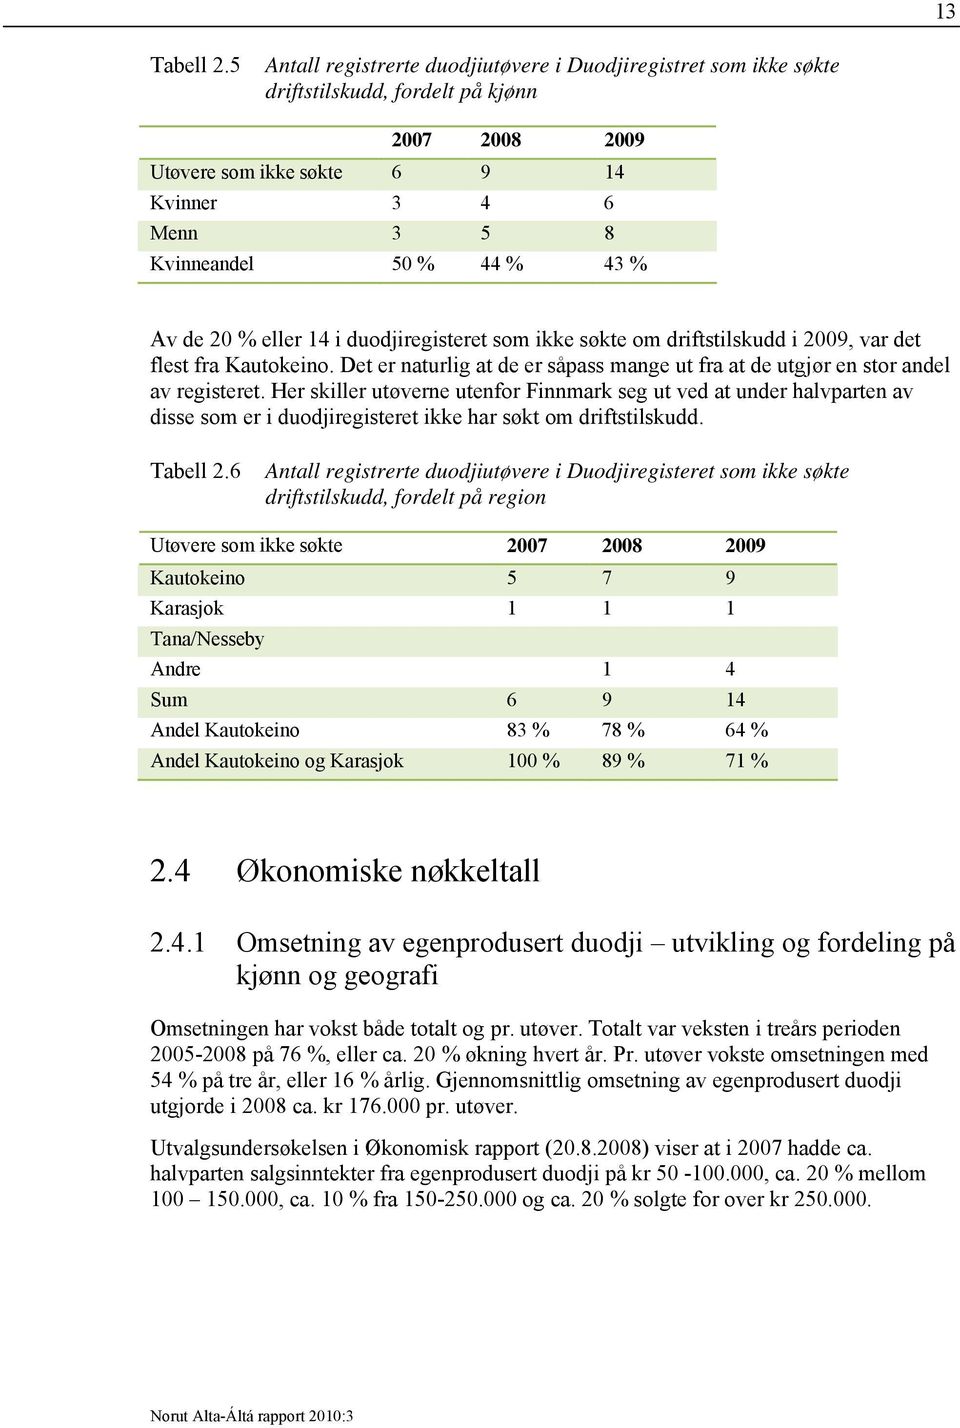 Av de 20 % eller 14 i duodjiregisteret som ikke søkte om driftstilskudd i 2009, var det flest fra Kautokeino. Det er naturlig at de er såpass mange ut fra at de utgjør en stor andel av registeret.